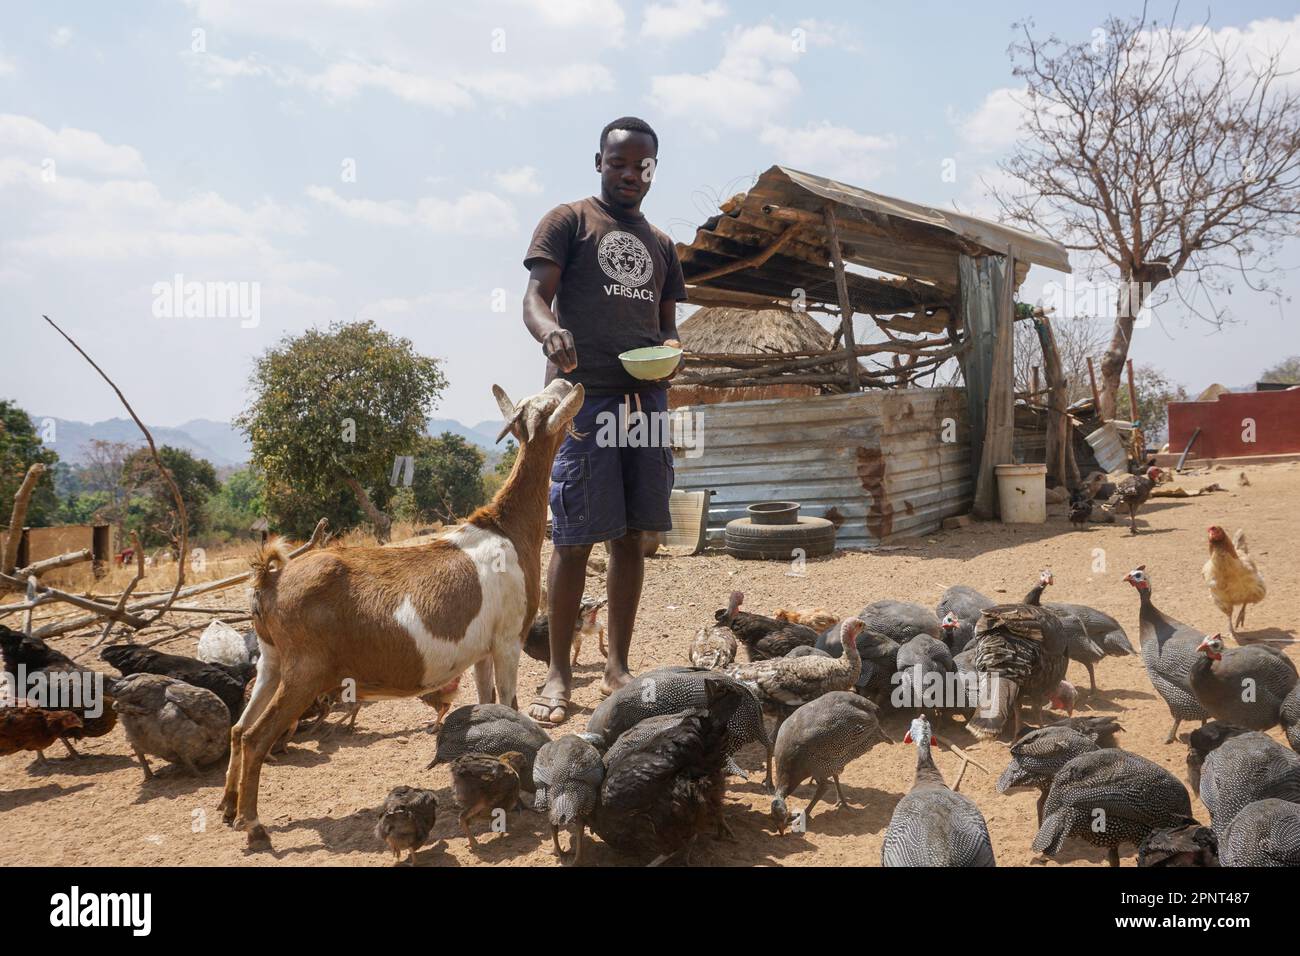 Perkins Nyamayaro füttert am 5. September 2021 in Domboshava, Simbabwe, Straßenläufer-Hühner, Truthähne und Perlhühner. Nyamayaro, der Freilandgeflügel zum Verkauf züchtet, hat mehr als 80 Vögel. (Gamuchirai Masiyiwa/Global Press Journal) Stockfoto